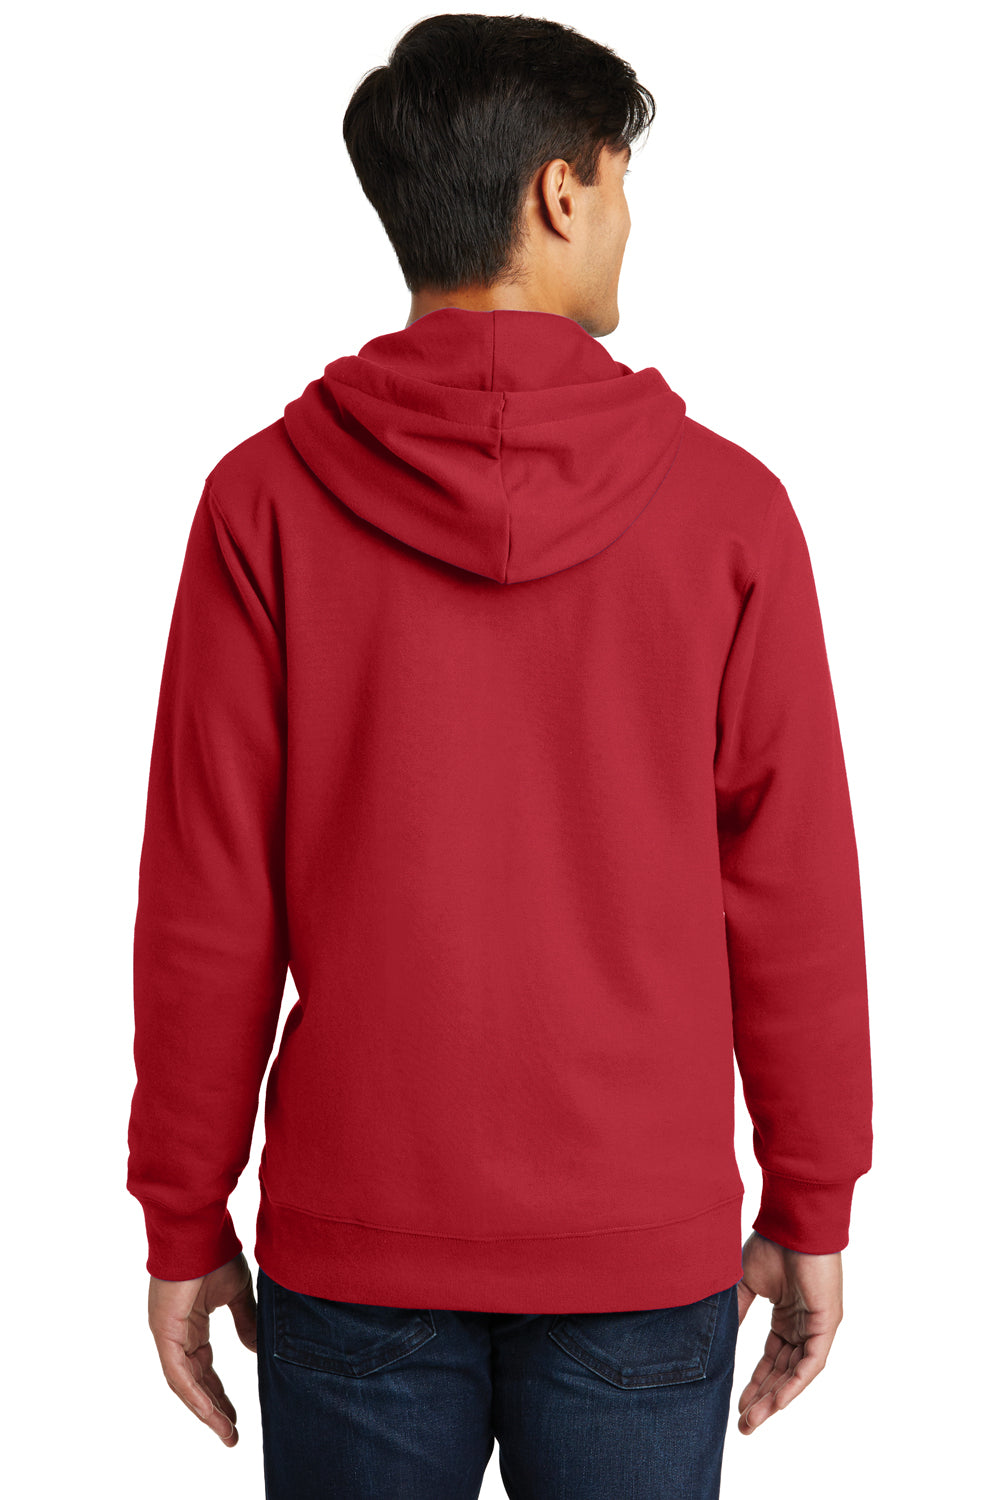 Port & Company PC850ZH Mens Fan Favorite Fleece Full Zip Hooded Sweatshirt Hoodie Cardinal Red Back